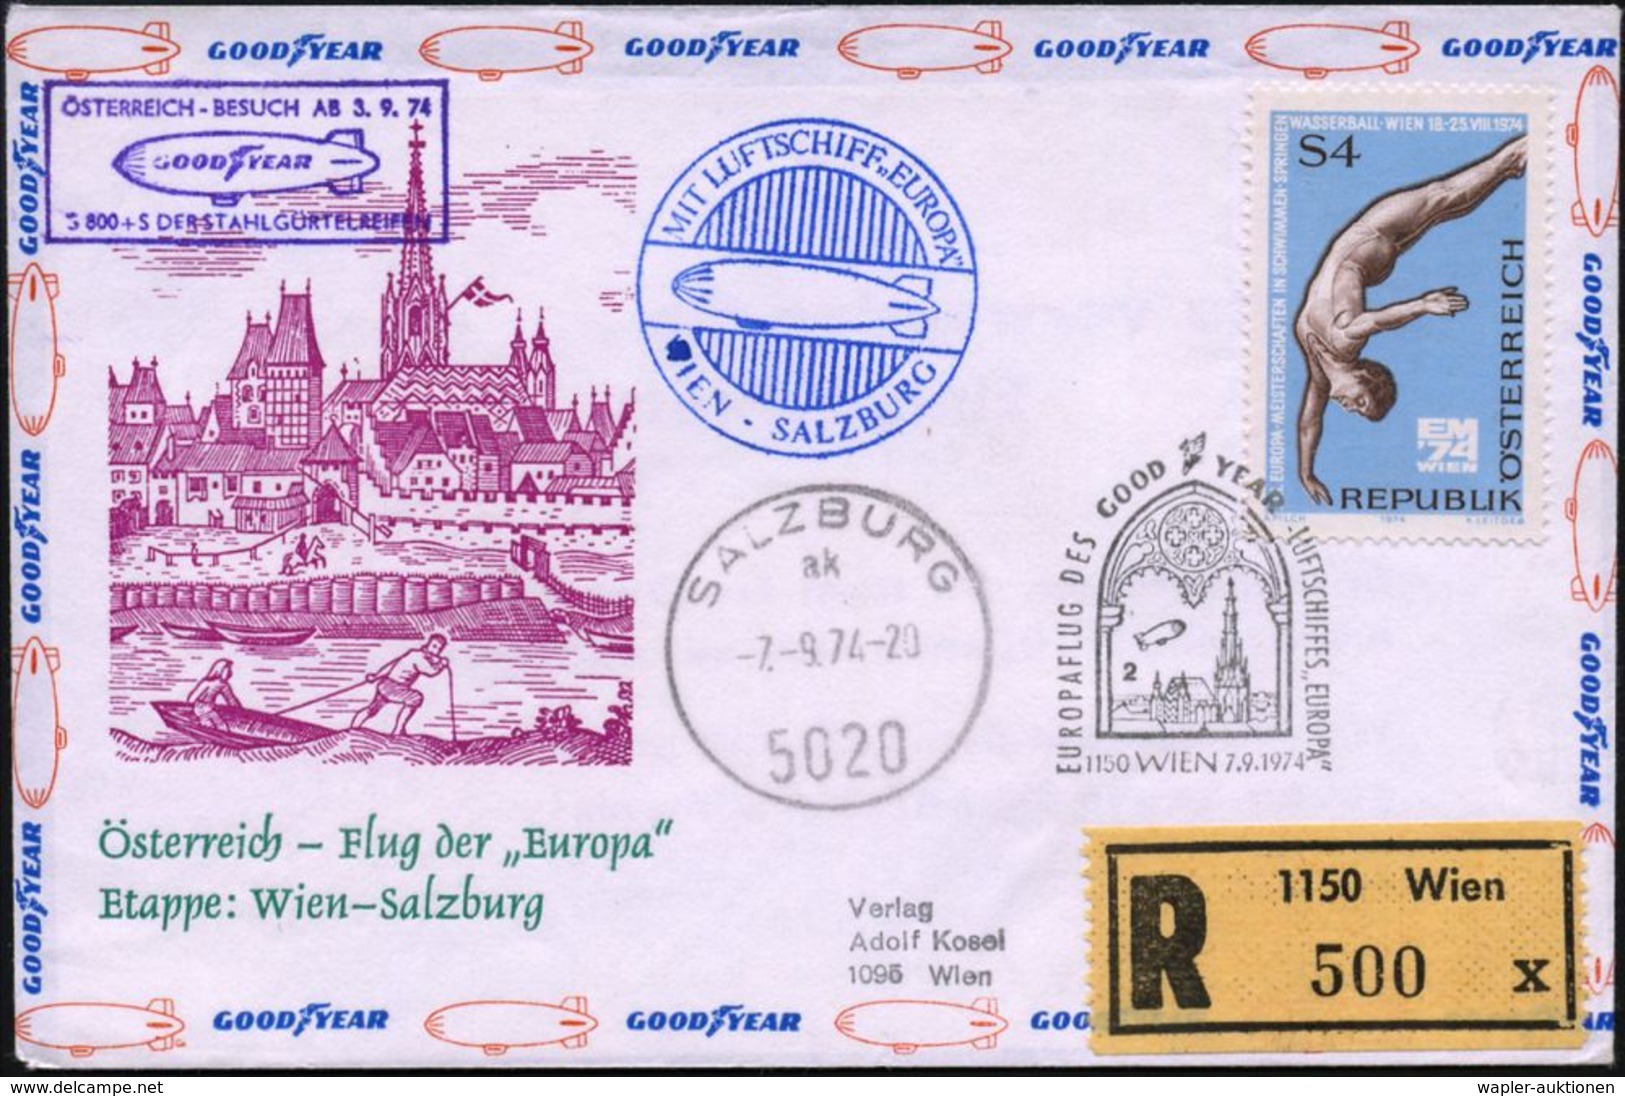 LUFTSCHIFFE (OHNE ZEPPELIN) : ÖSTERREICH 1974 (7.9.) SSt.: 1150 WIEN/EUROPAFLUG DES GOODYEAR-LUFTSCHIFFES "EUROPA" (Luft - Zeppelins